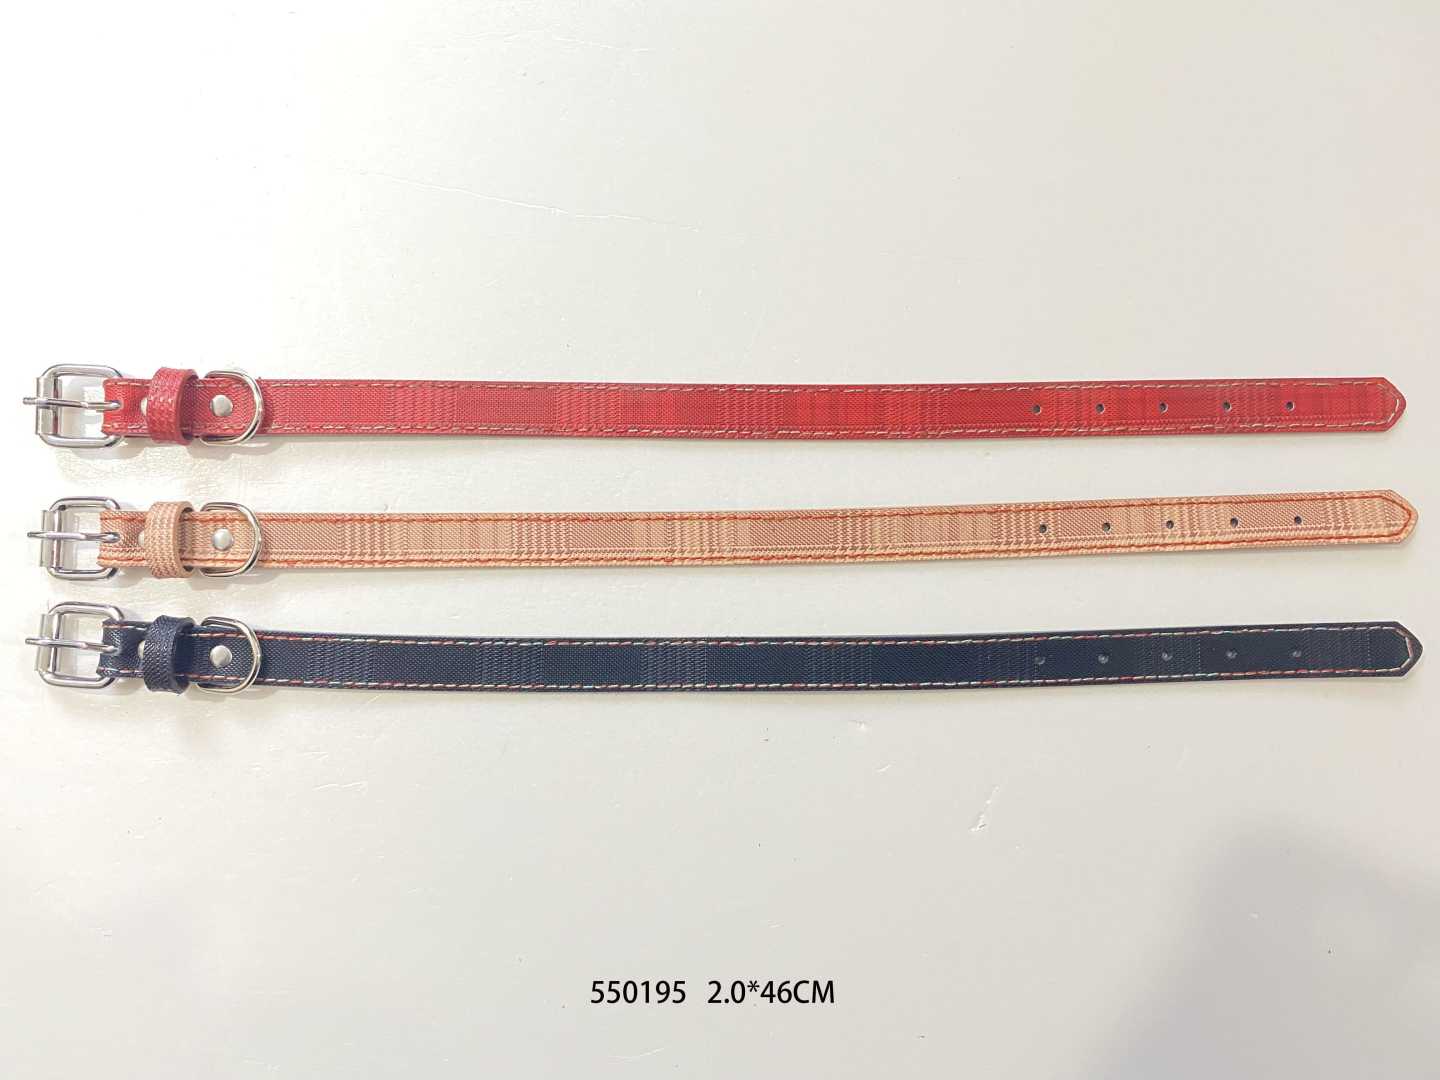 Collar - Dog collar - 2x46cm - 550195